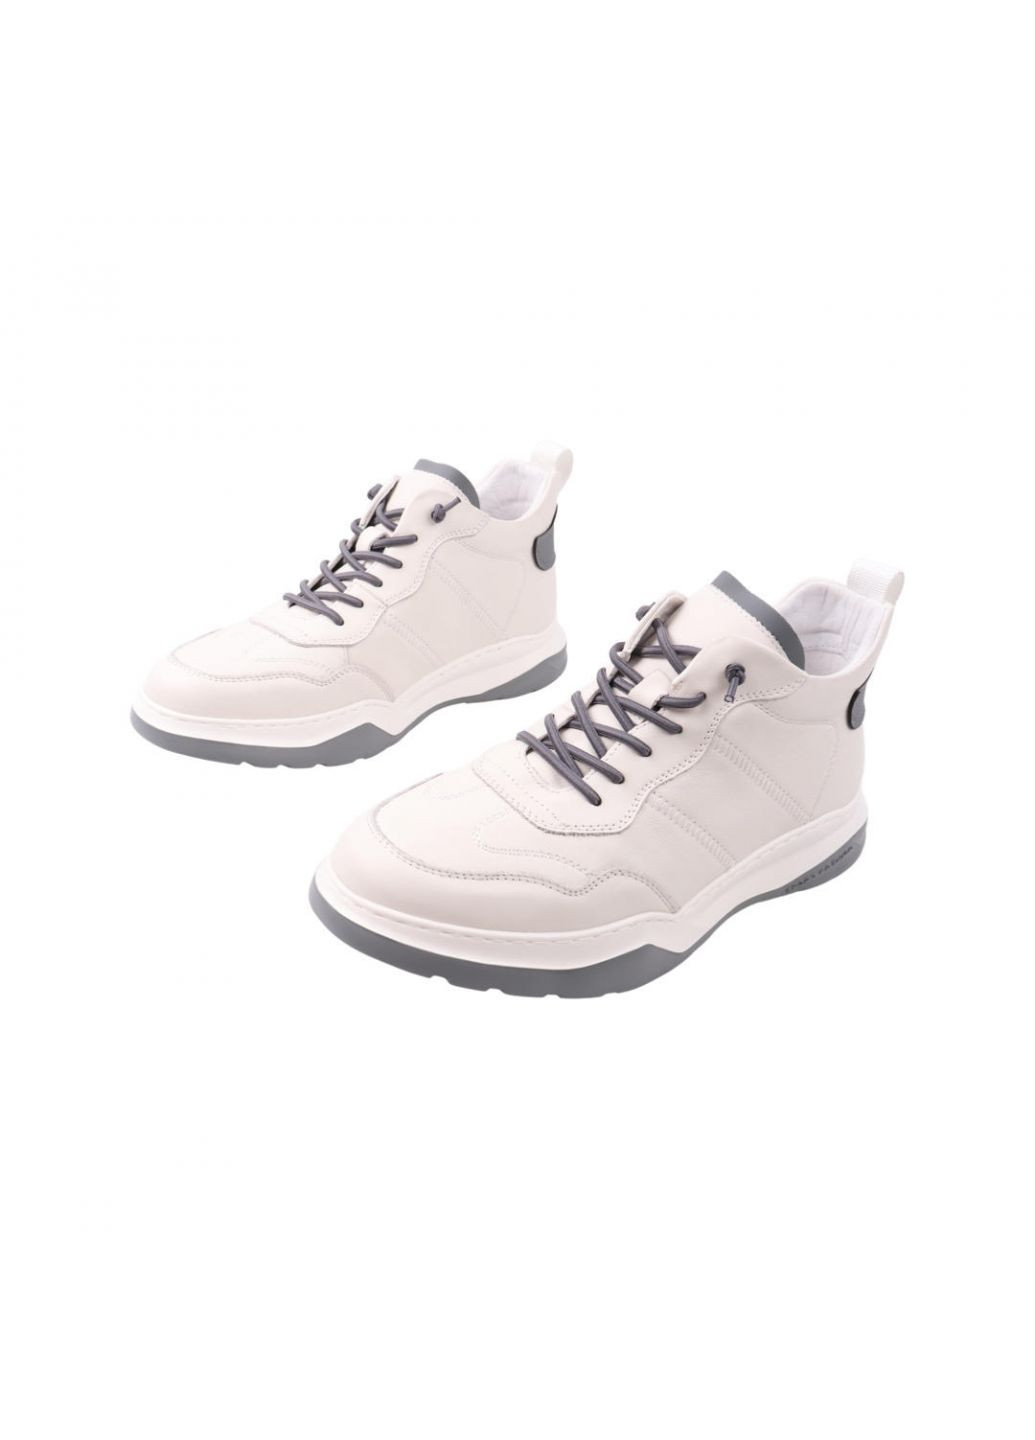 Белые ботинки мужские молочные натуральная кожа Lifexpert